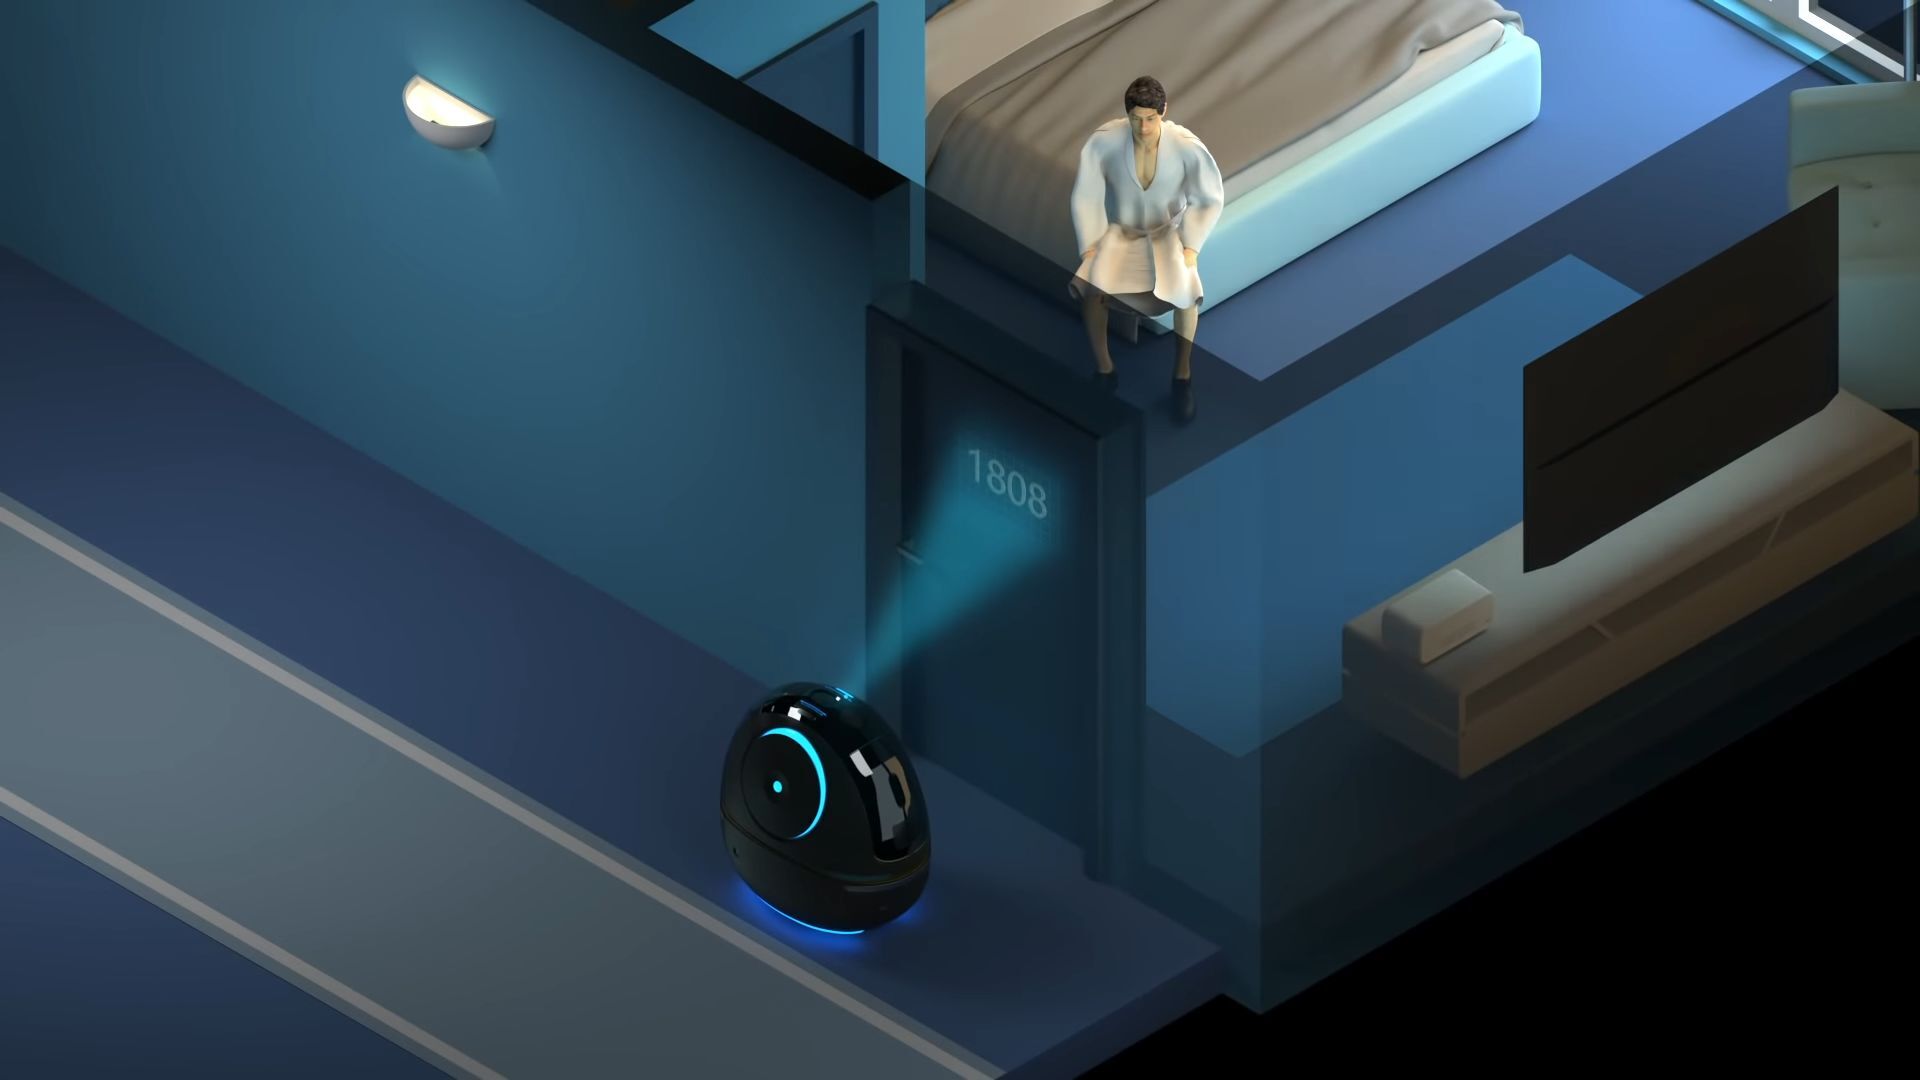 Hotelový sluha Space Egg – komerční robot od společnosti Alibaba